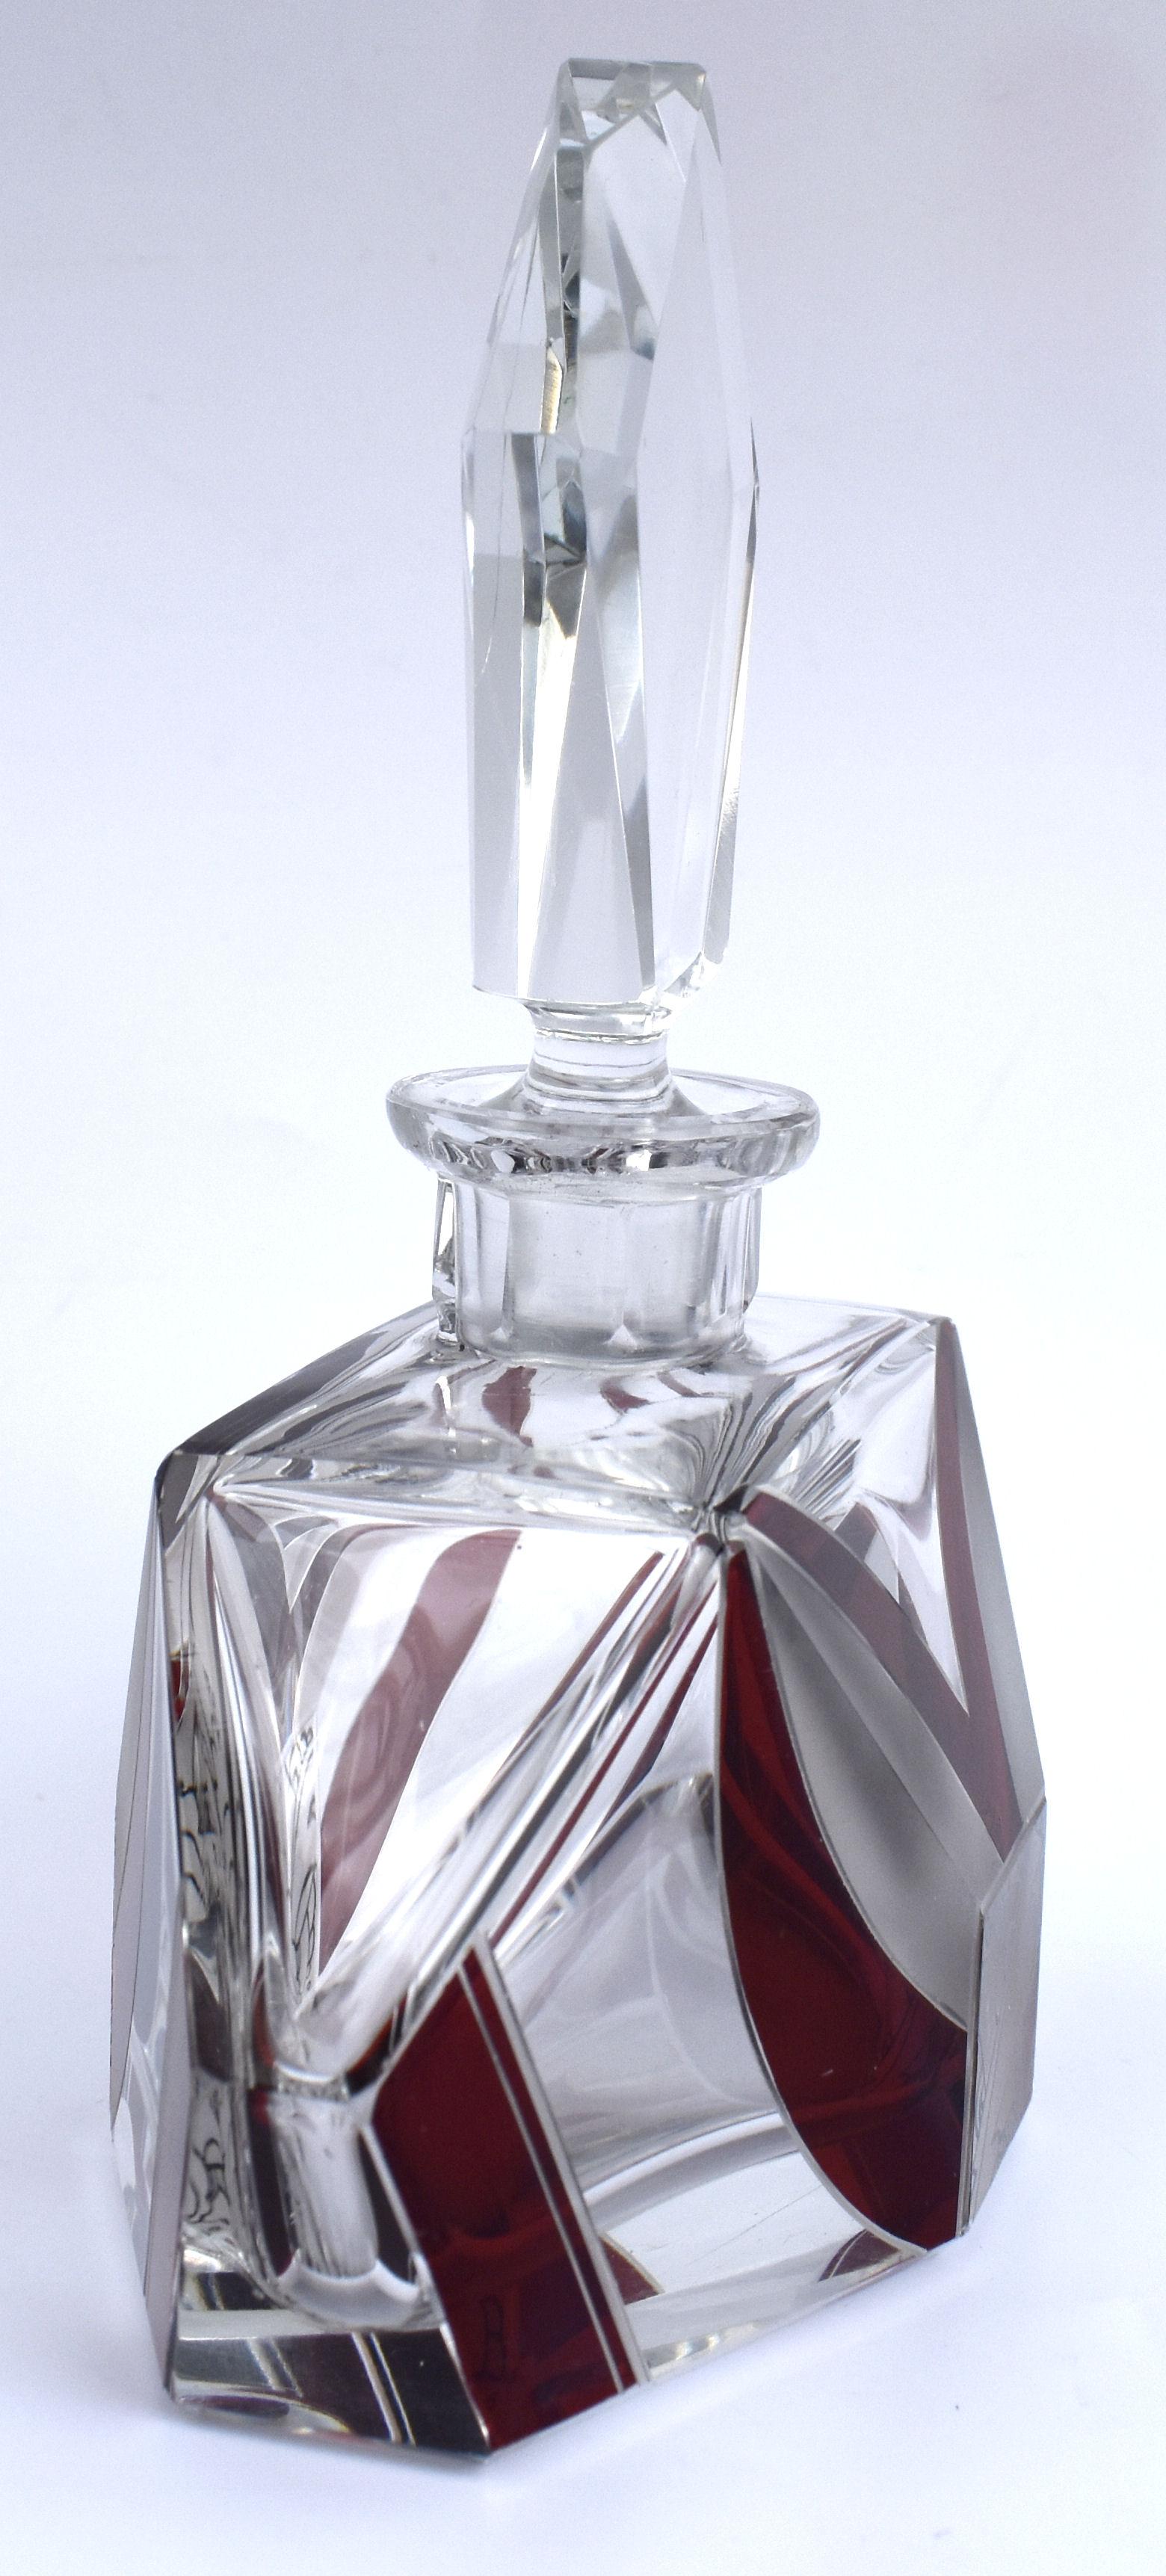 Czech Art Deco Huge Perfume Bottle by Karl Palda, c1930